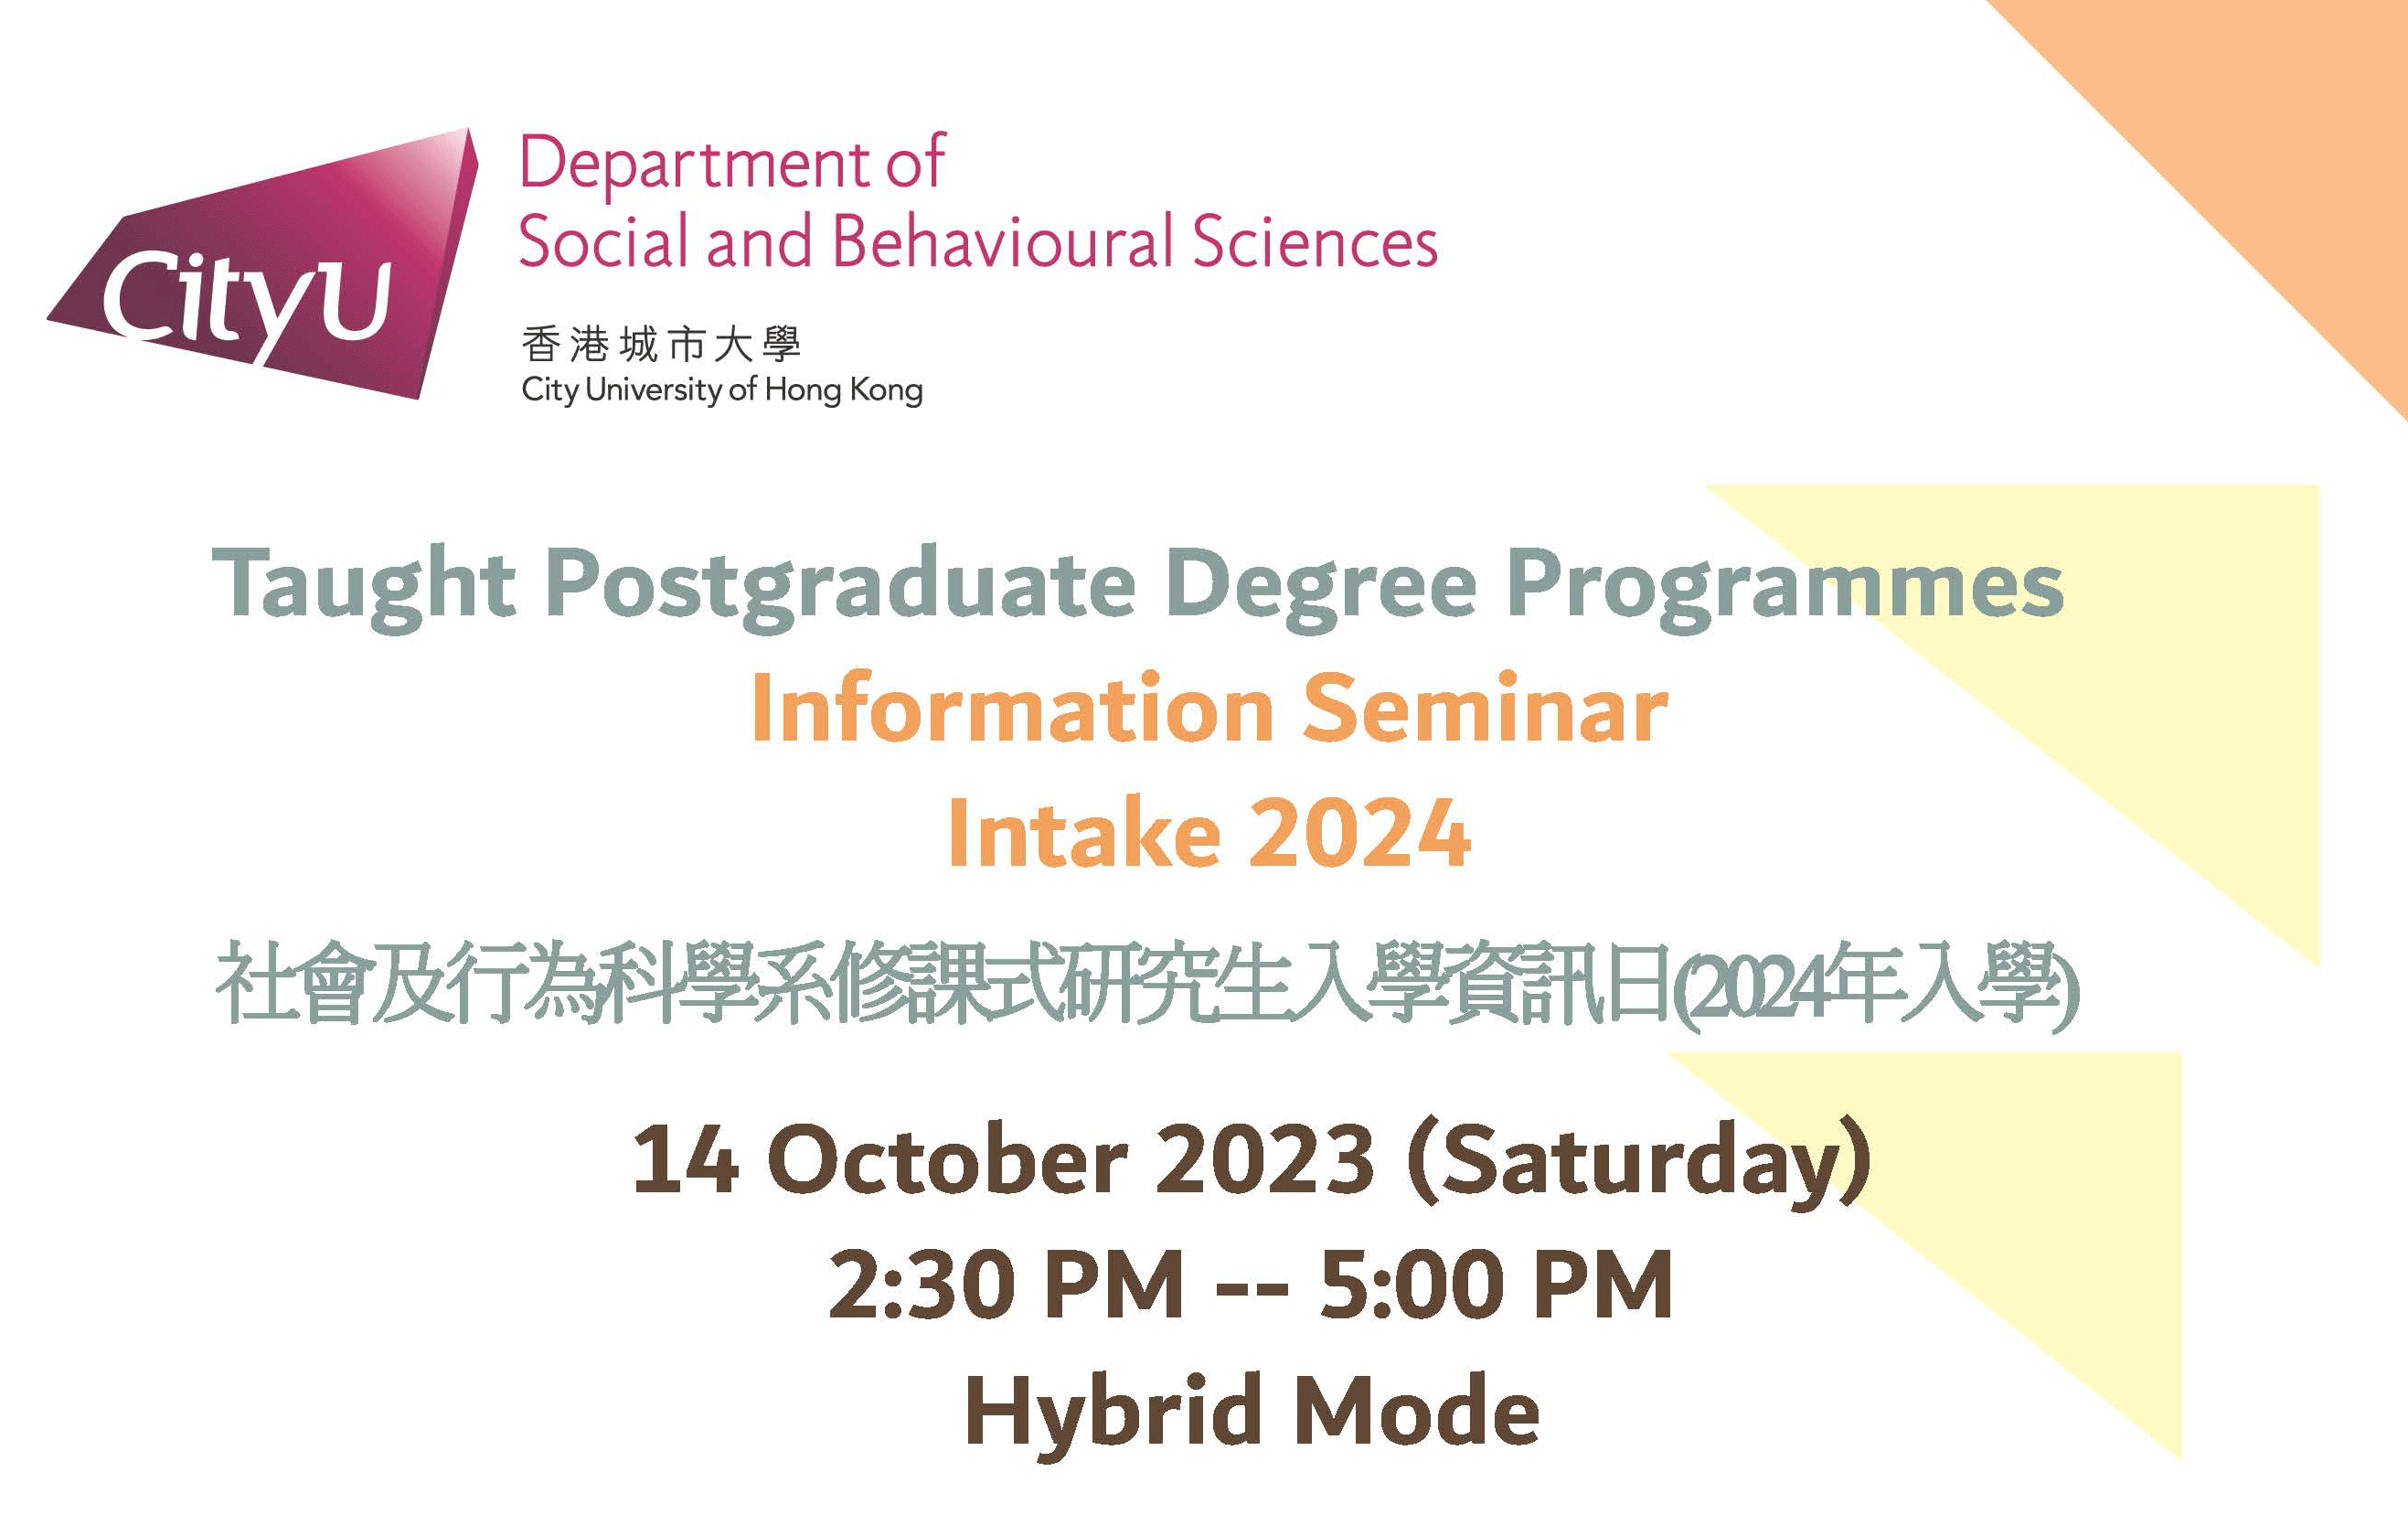 Information Seminar Intake 2024